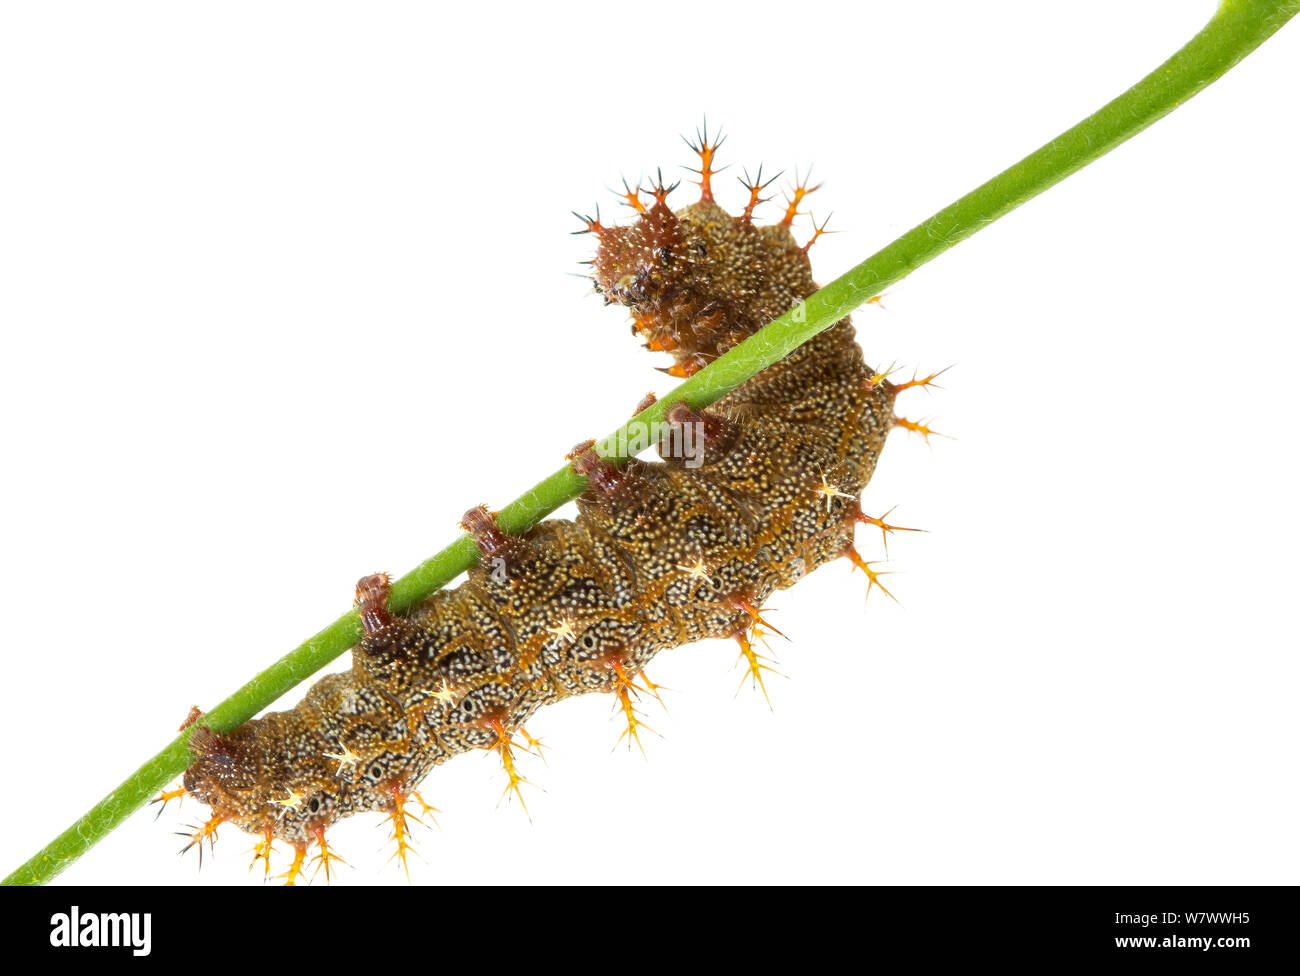 Fragezeichen Caterpillar (Polygonia interrogationis) Anacostia Wasserscheide, Washington DC, USA, August. Meetyourneighbors.net Projekt. Stockfoto